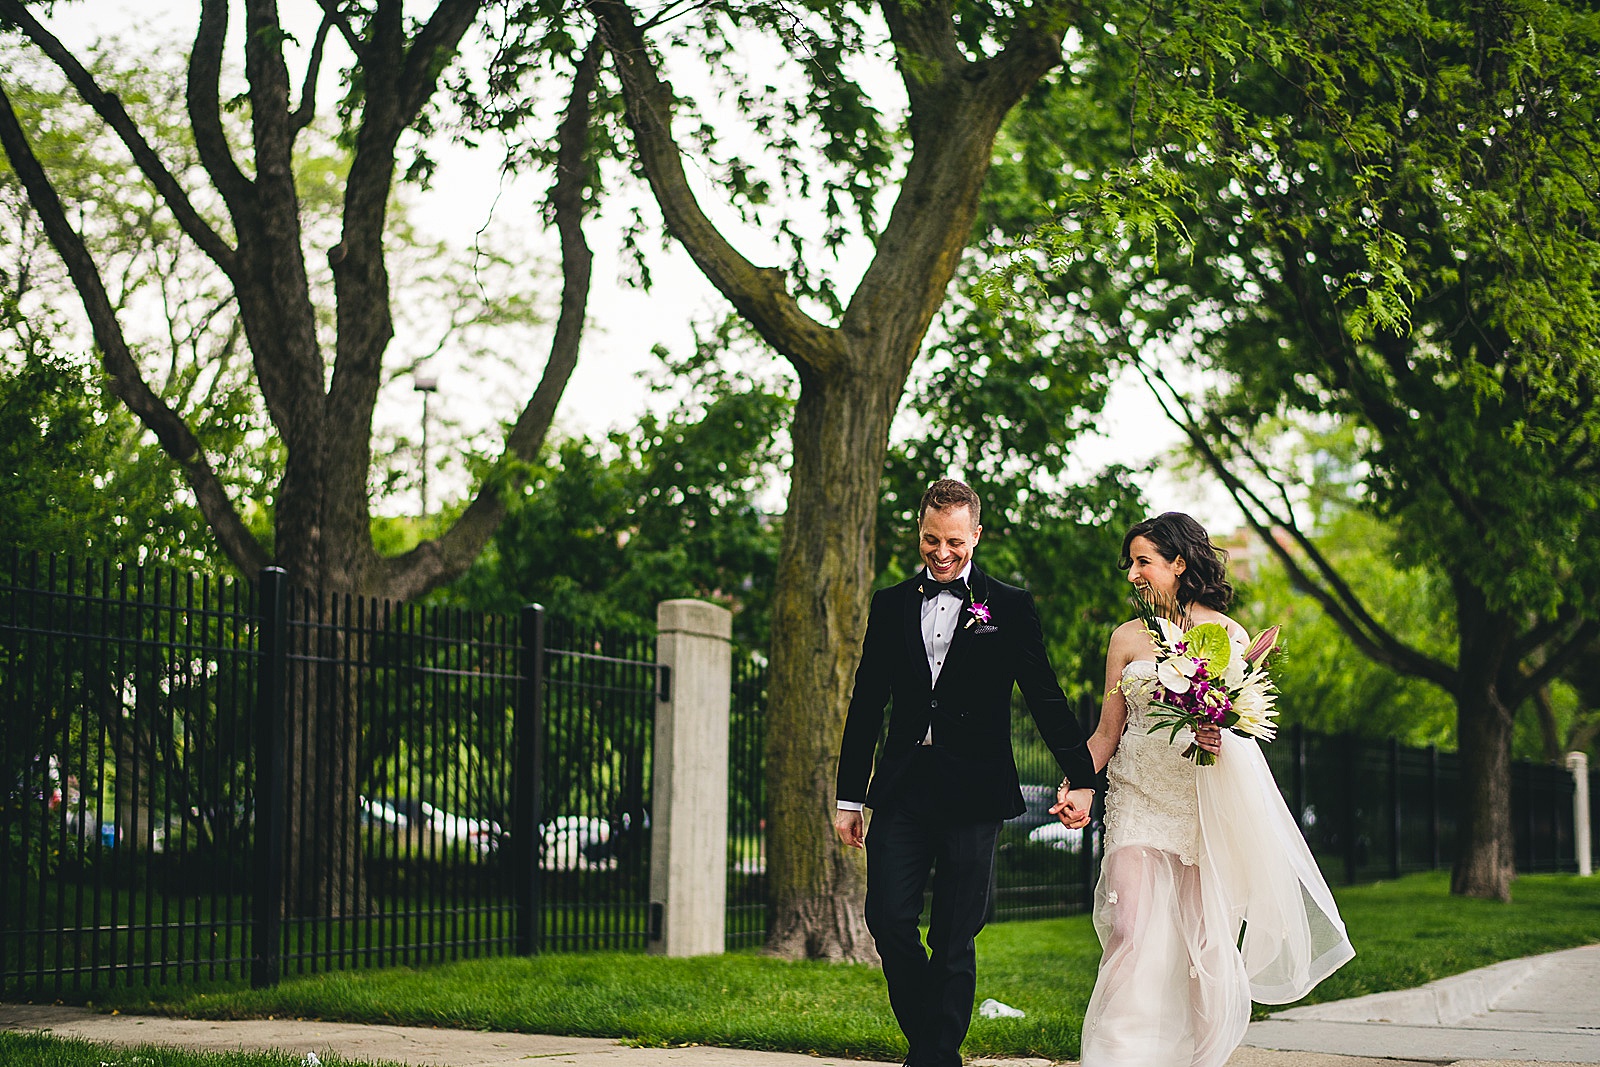 27 chicago wedding photo inspiration - Chicago Illuminating Company Wedding // Samantha + Jeremy